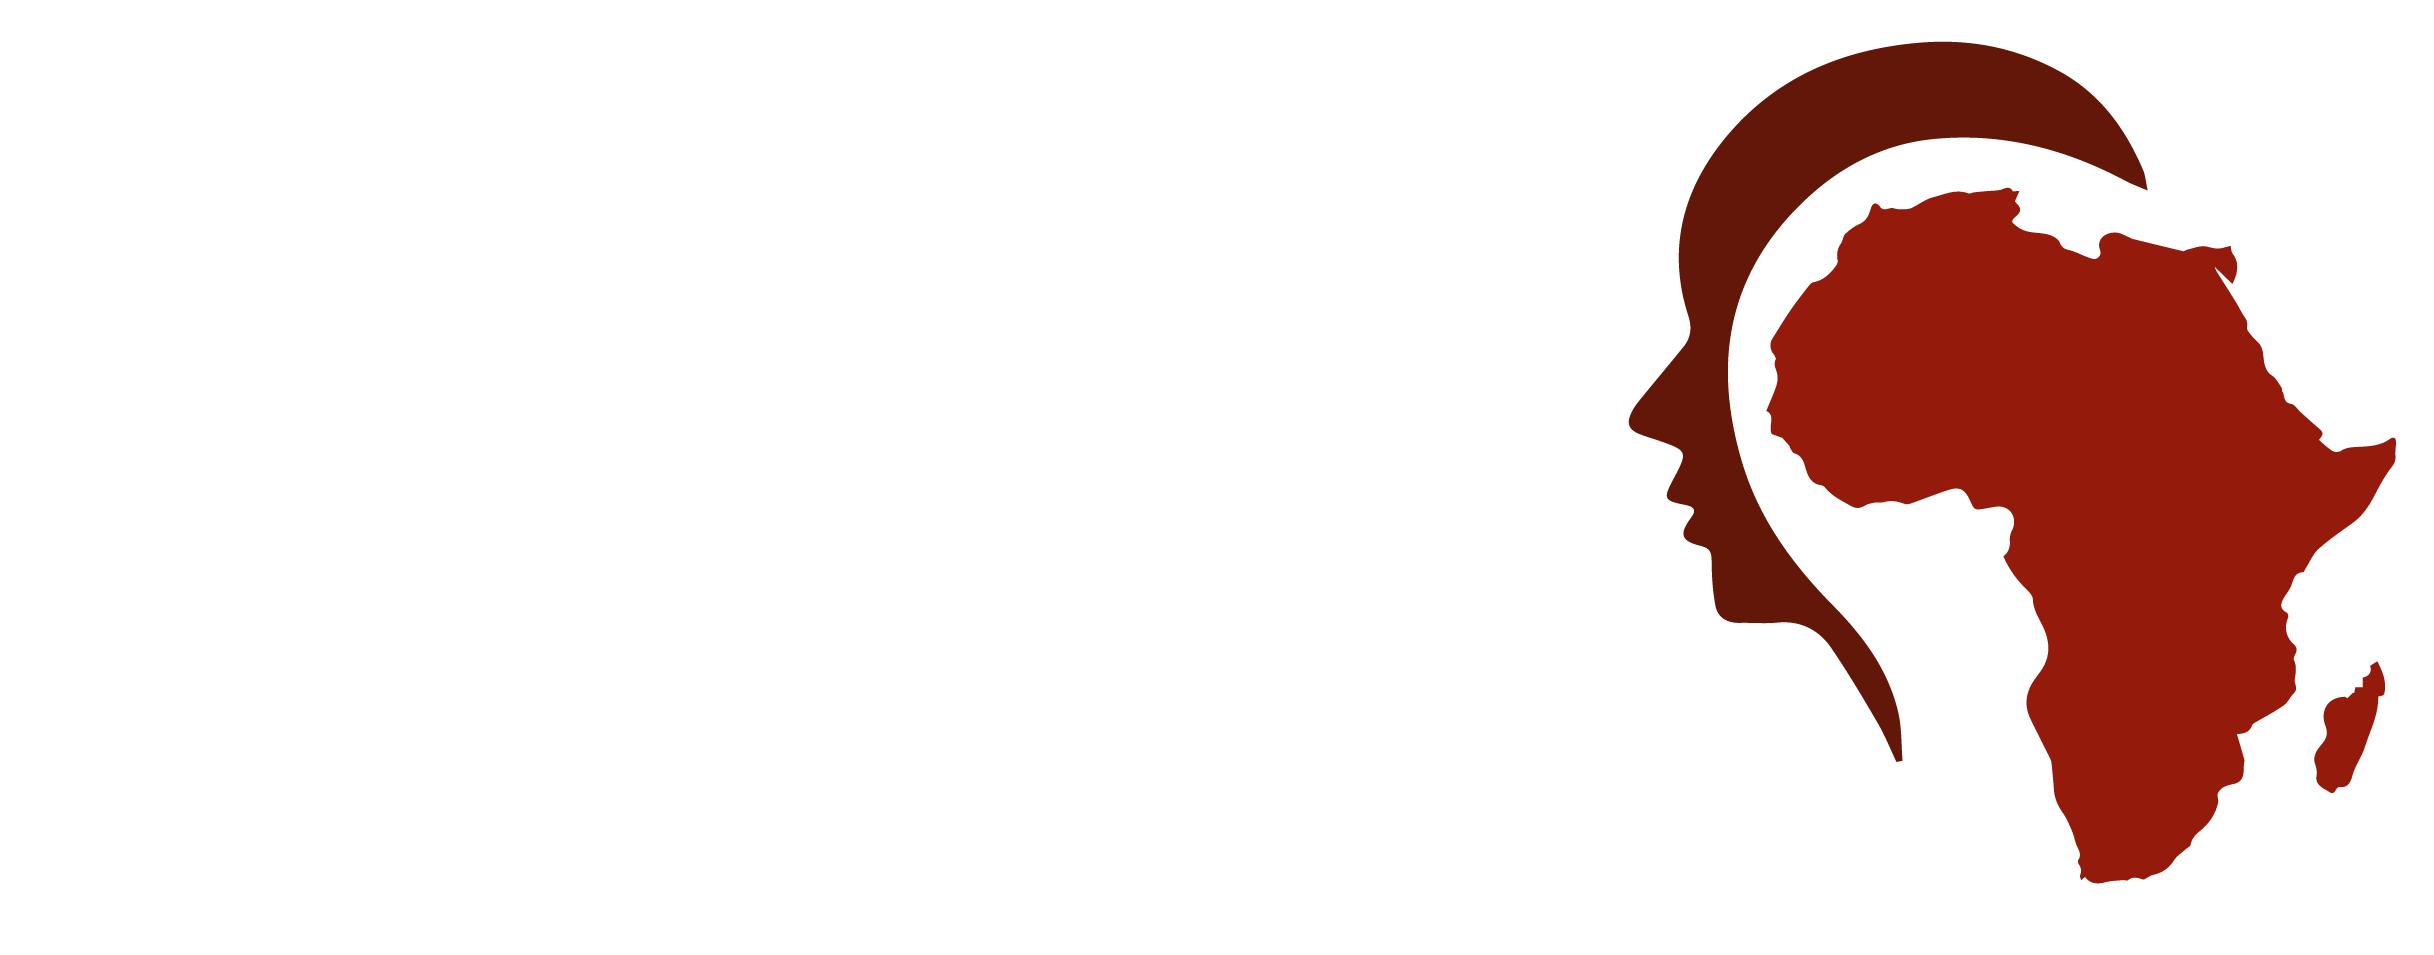 Find a Job in Africa